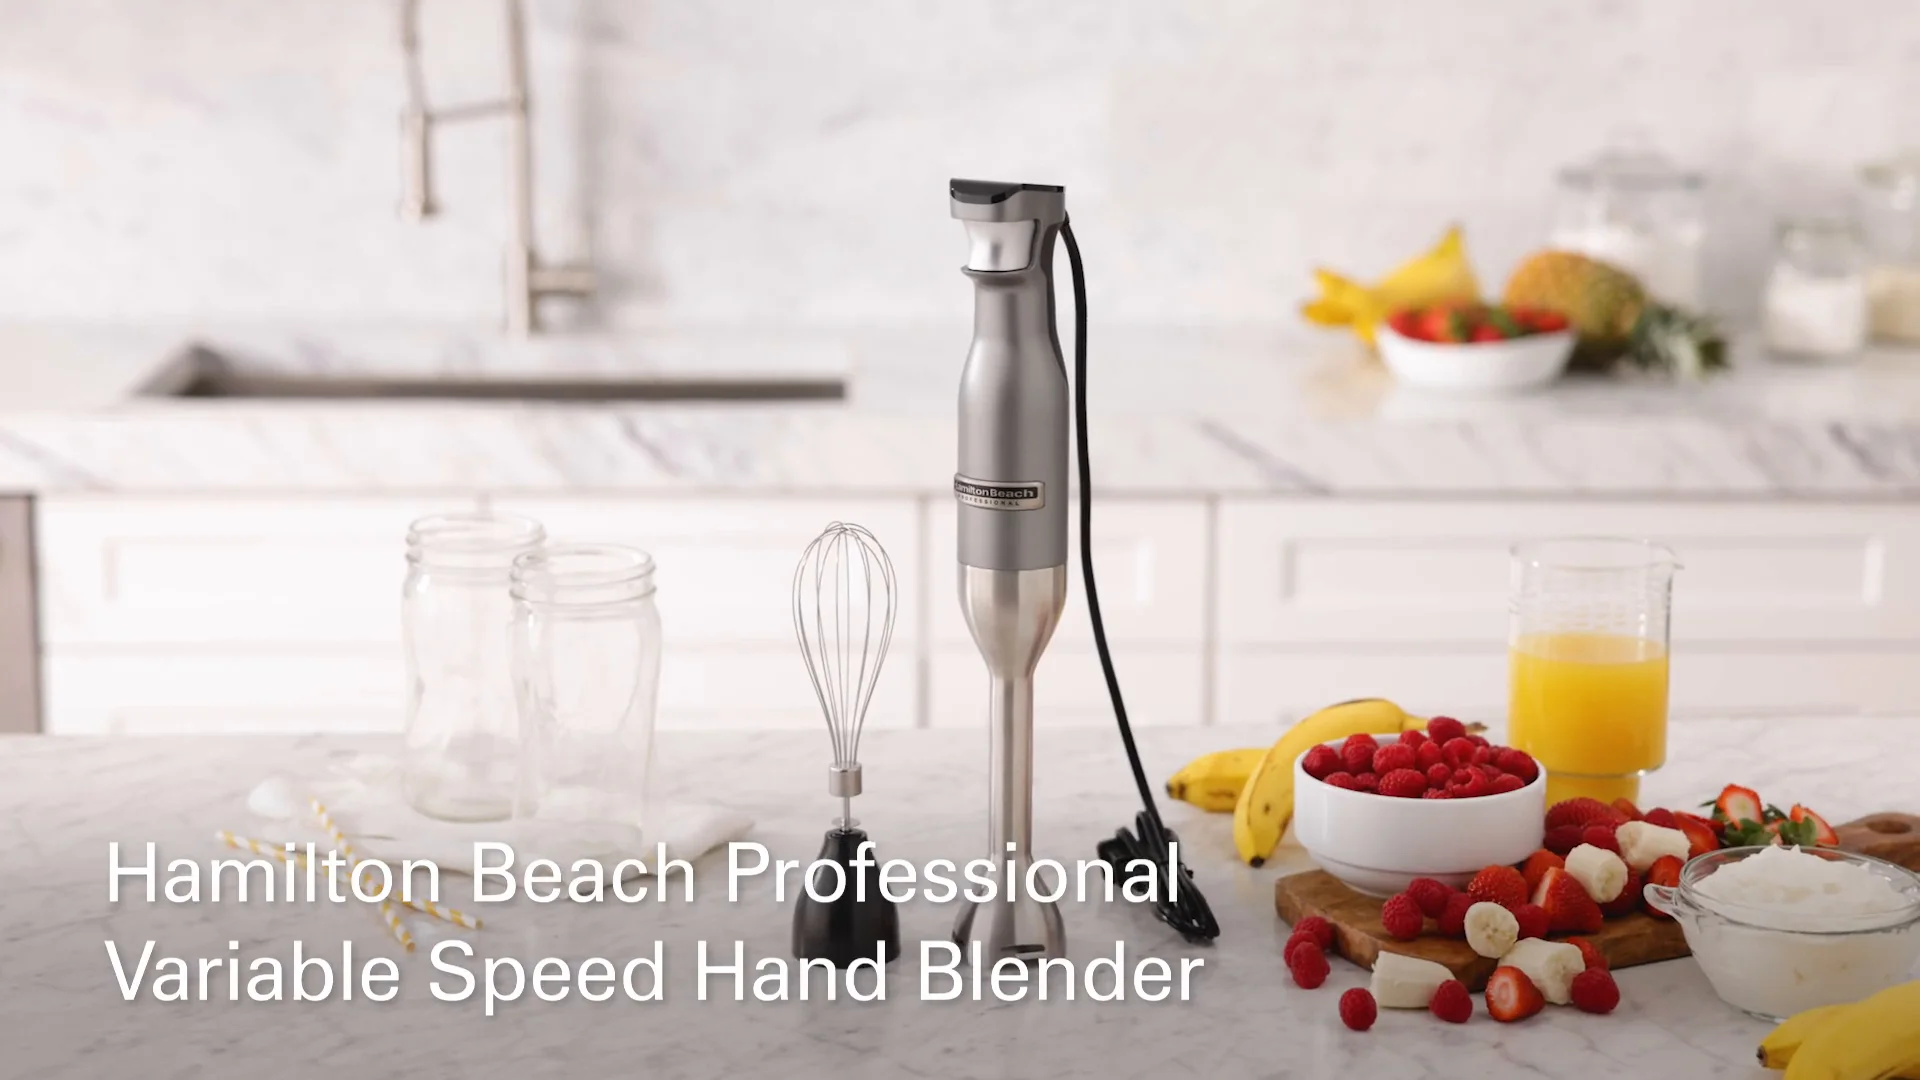 Cuisinart Variable Speed Hand Blender